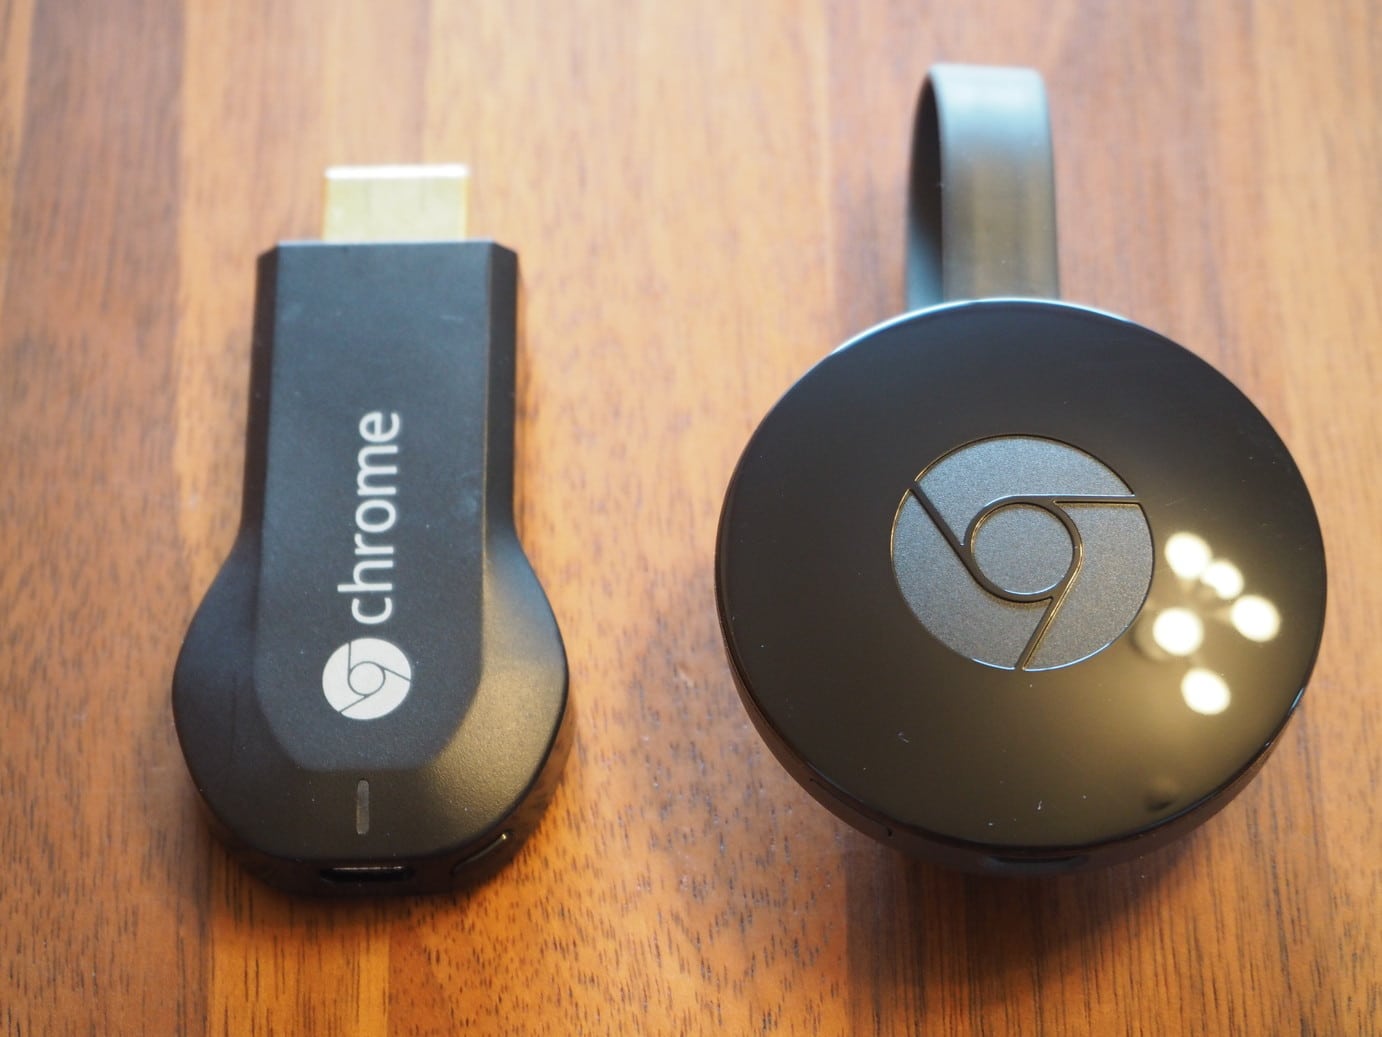 Chromecast(クロームキャスト)2nd 新型の購入レビューと新機能、価格まとめ。